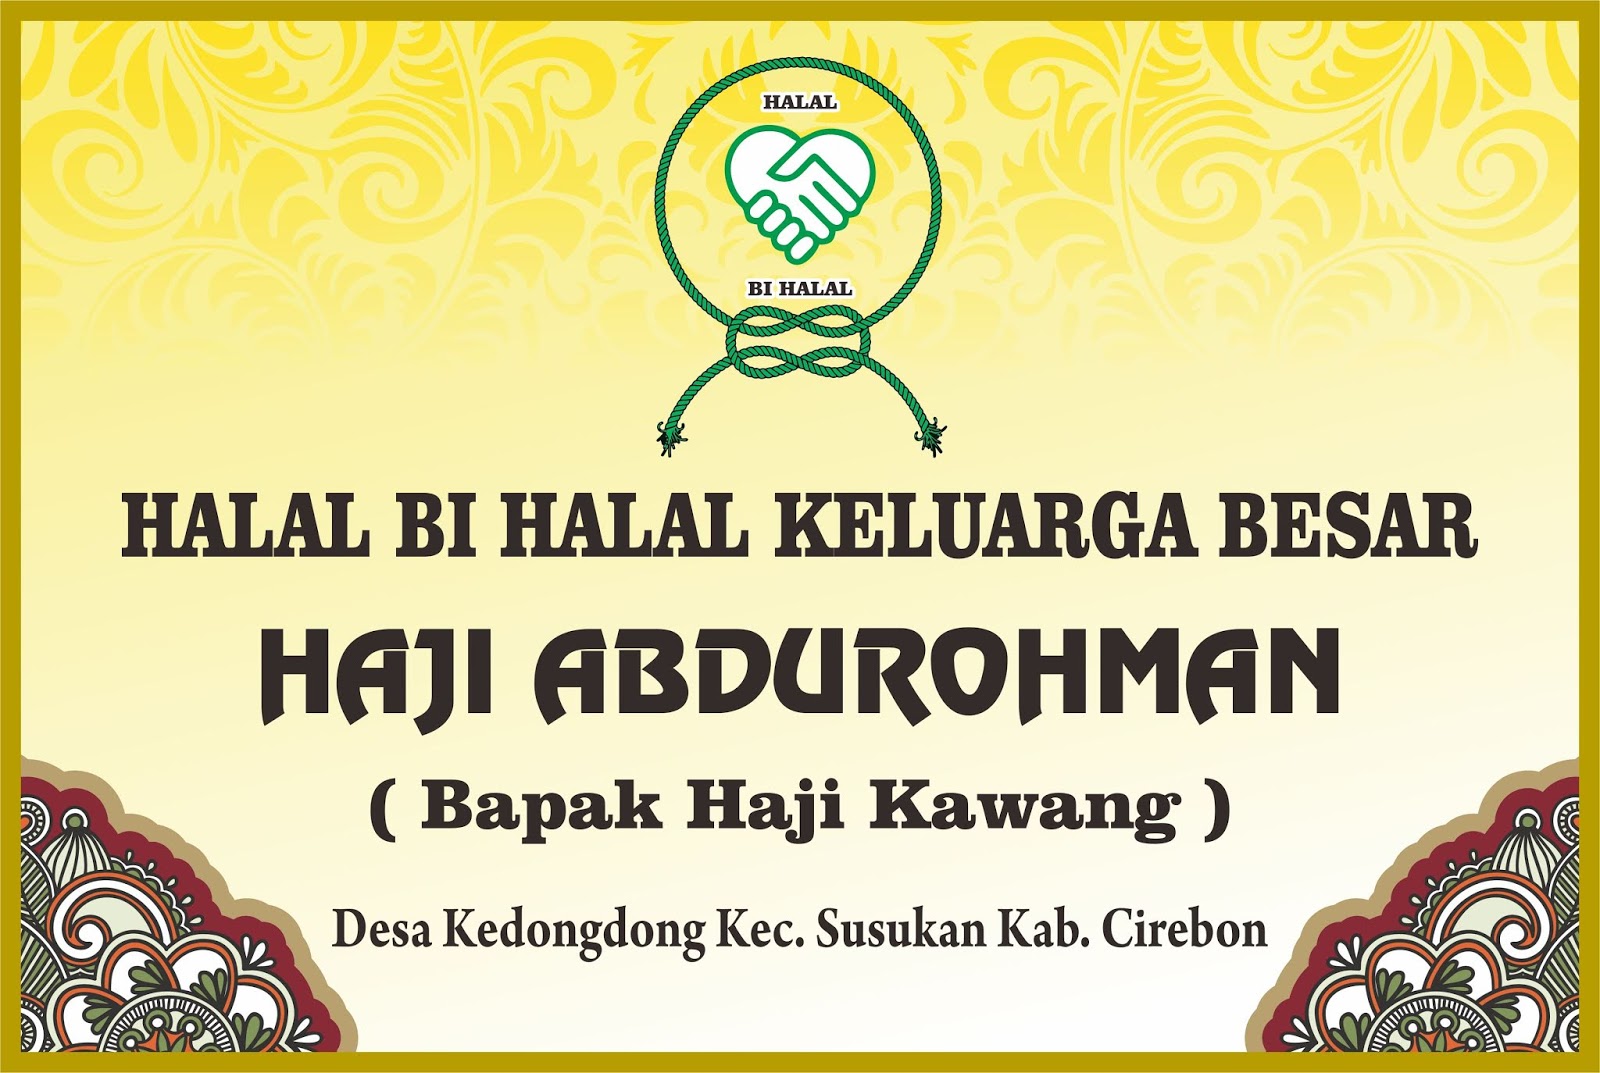 Contoh Desain Banner Spanduk Halal Bihalal Cdr Bannerspanduk